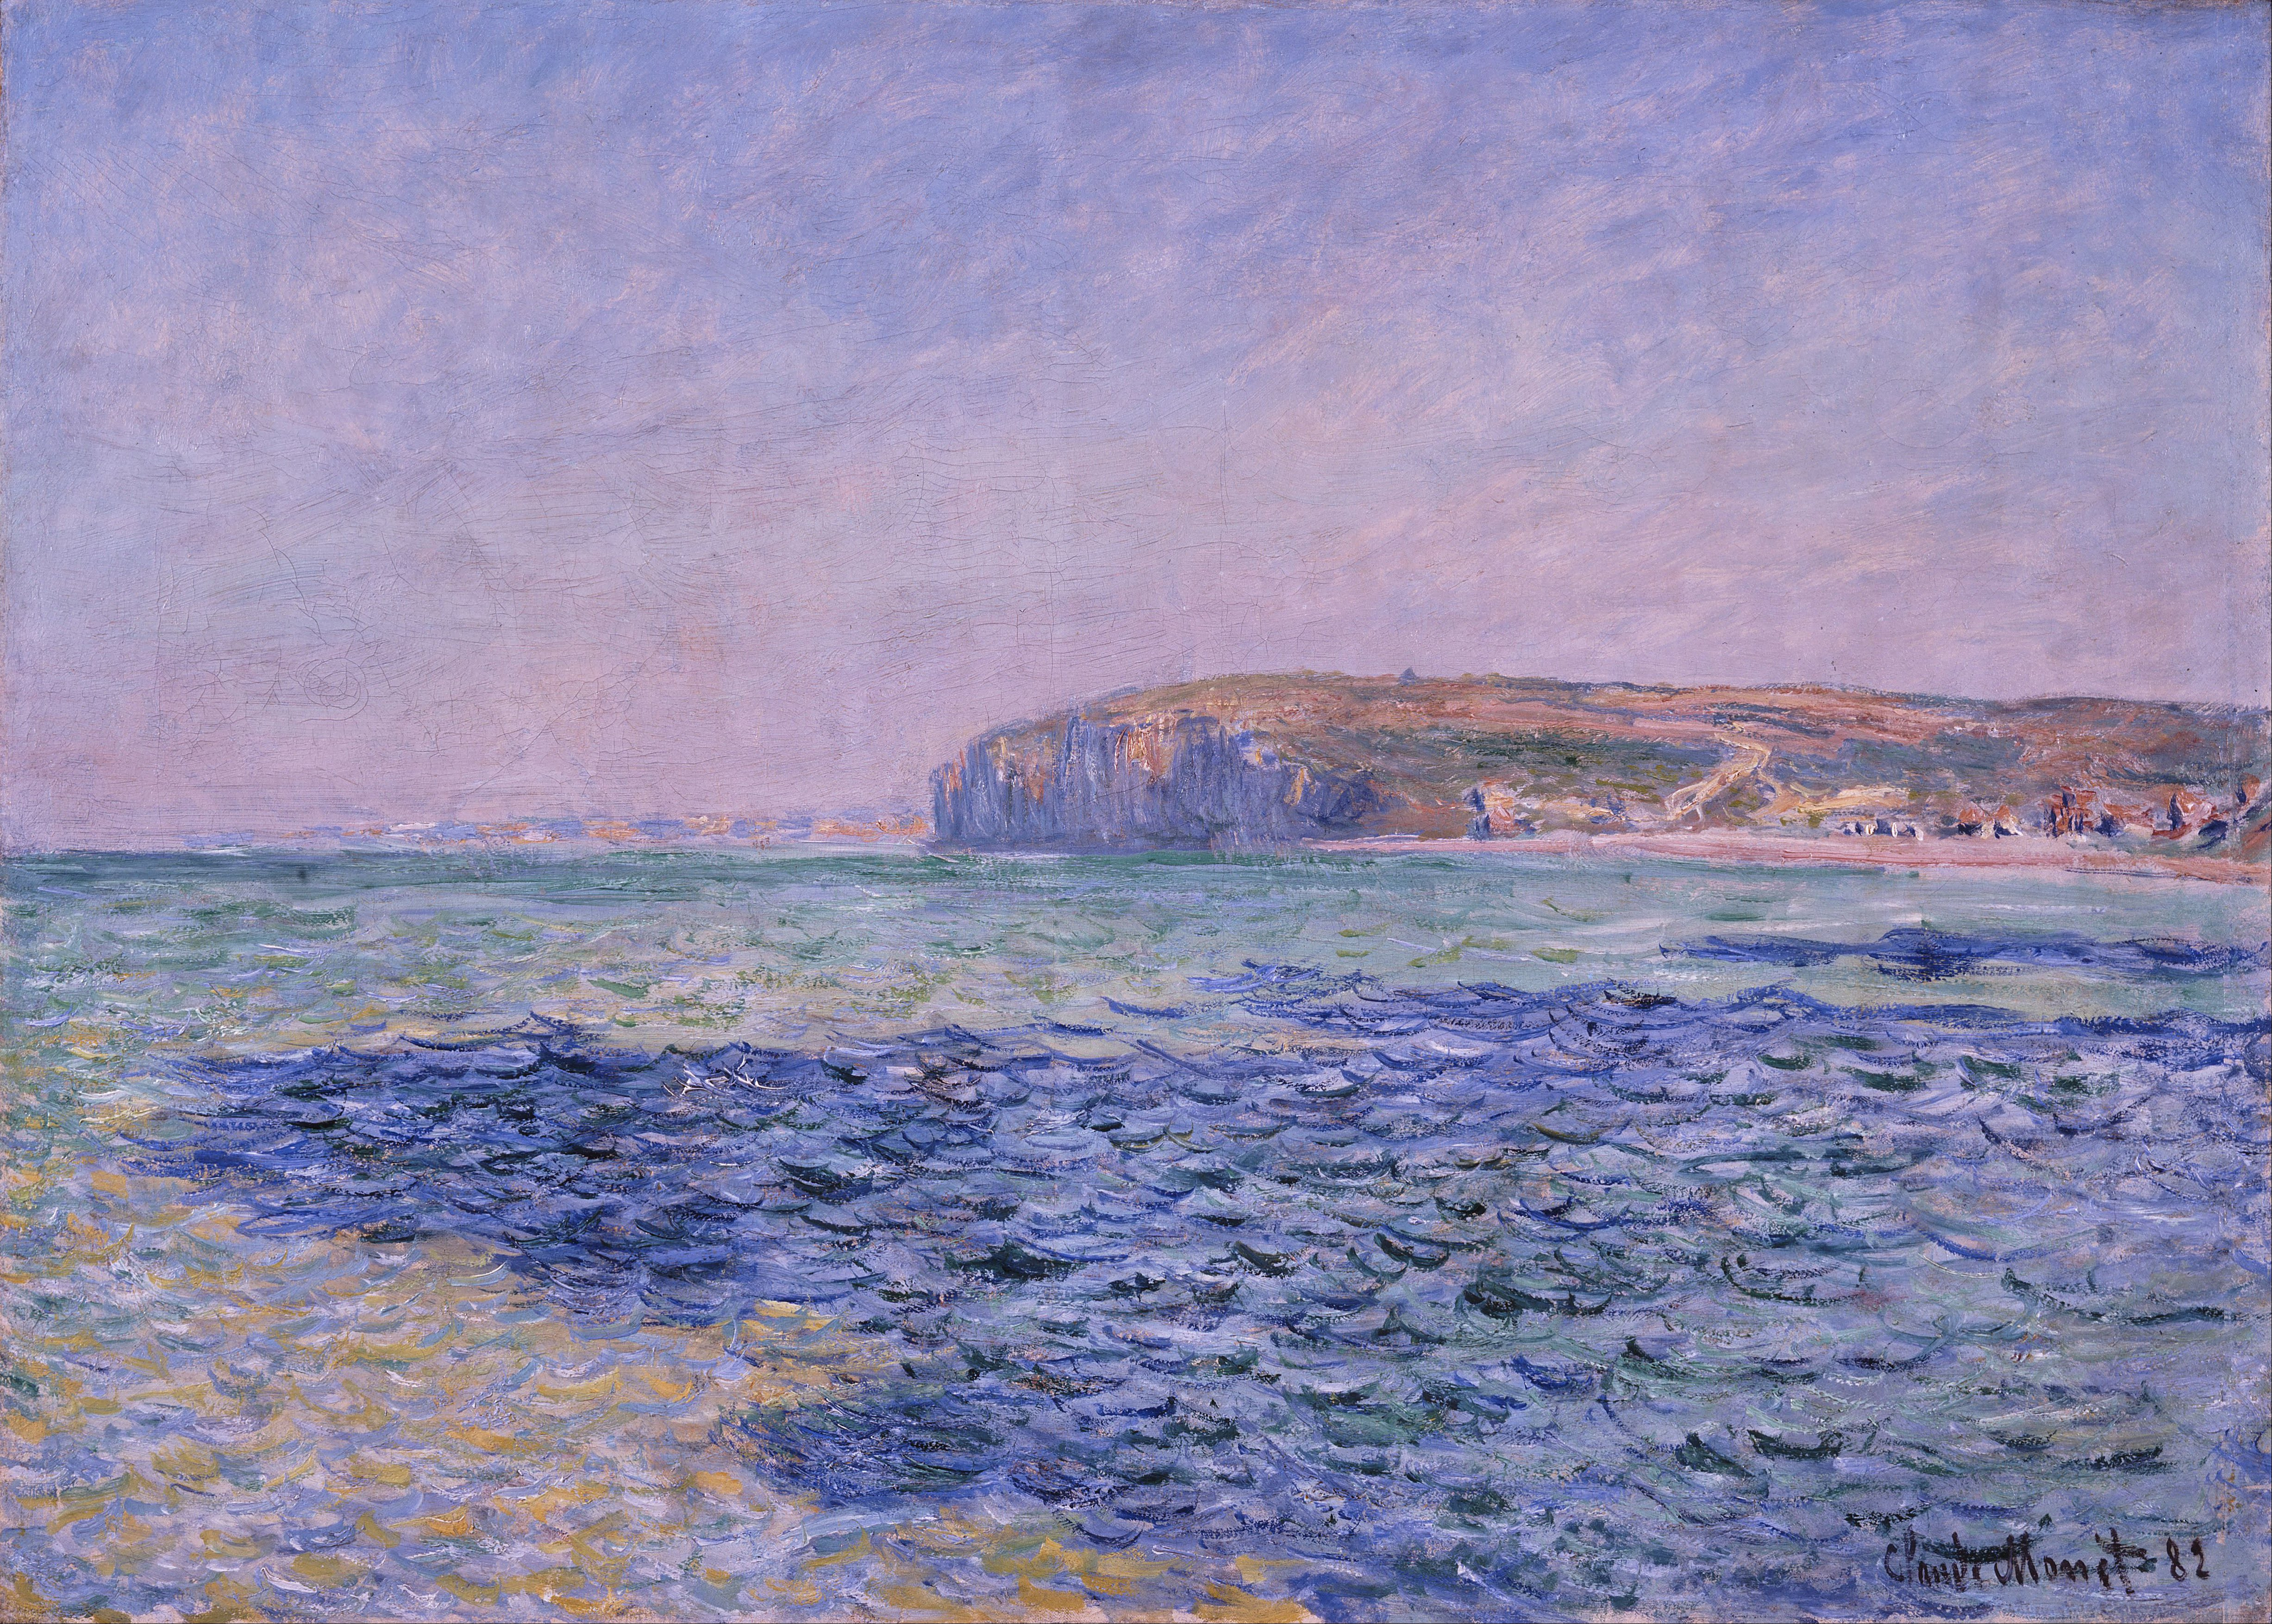 プールヴィルの海の影 by Claude Monet - 1882年 - 80 x 57 cm 